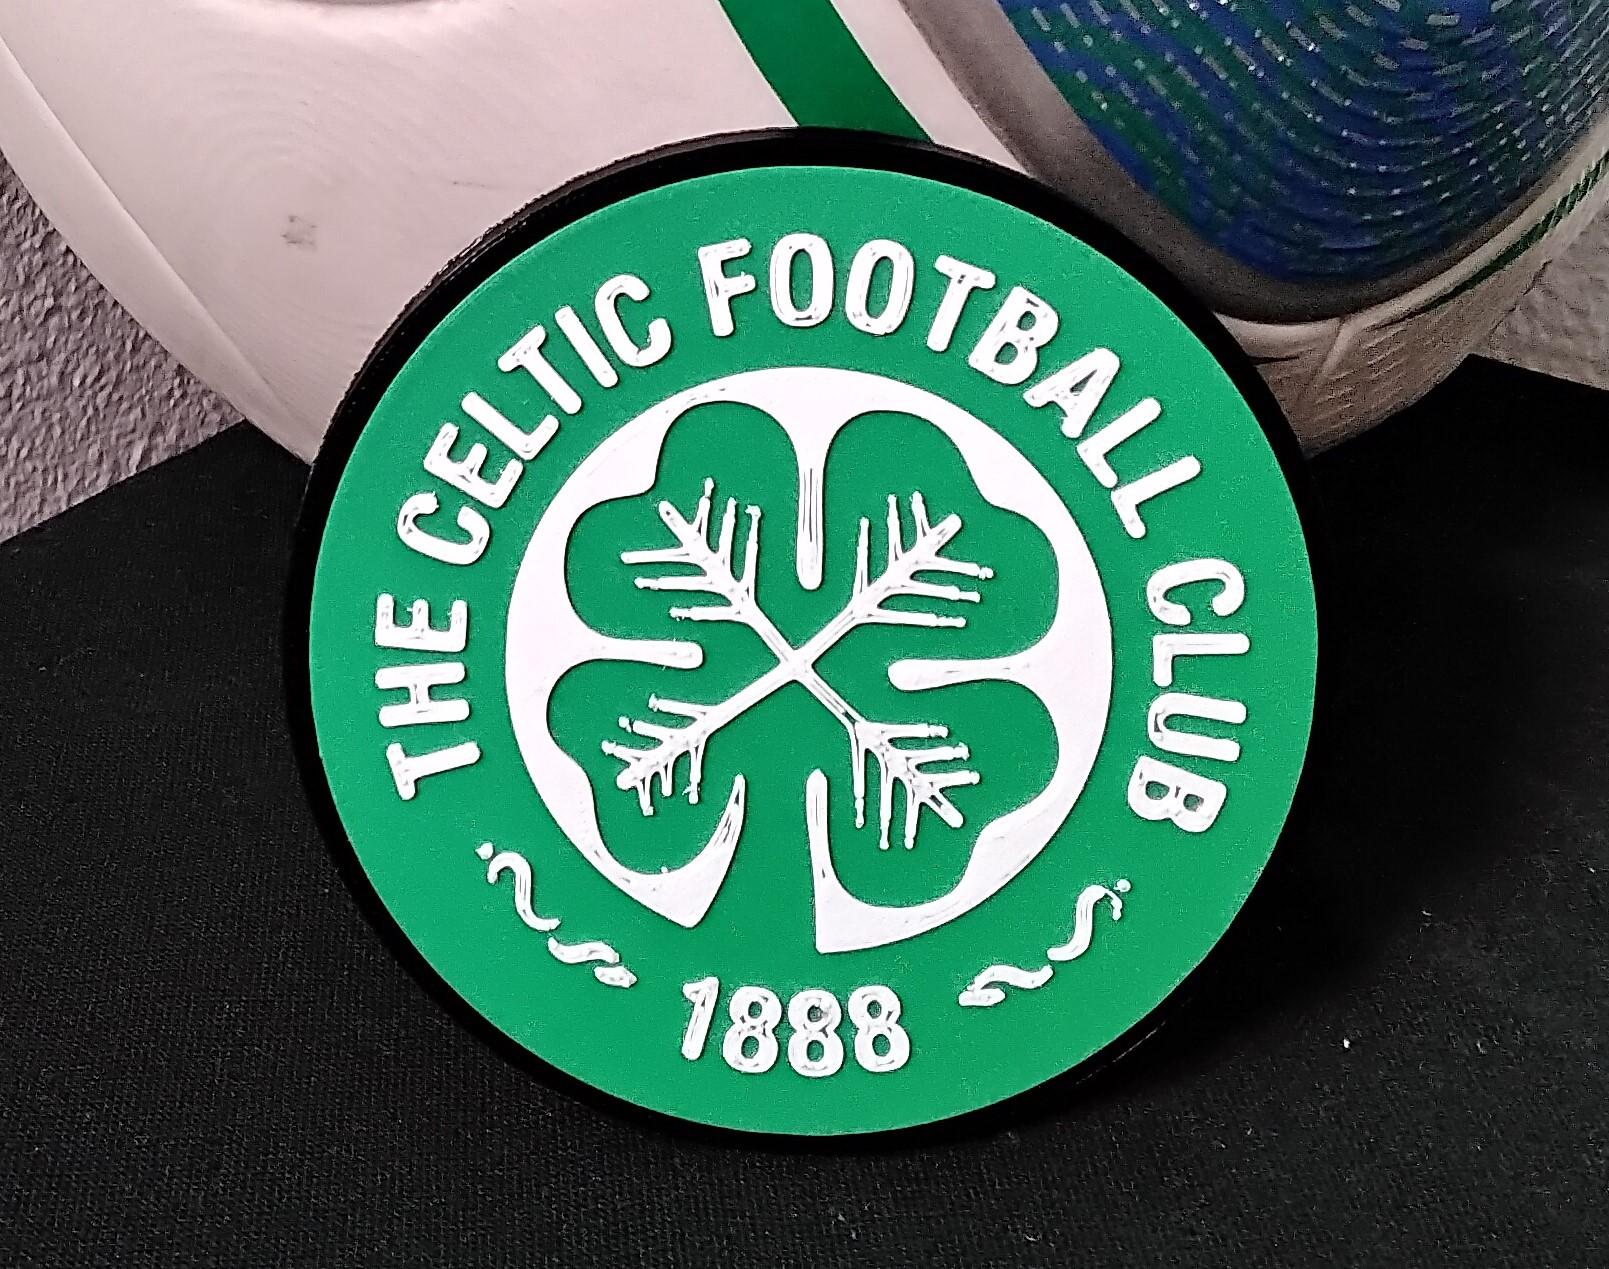 Convex The Celtic Football Club coaster or plaque 3d model